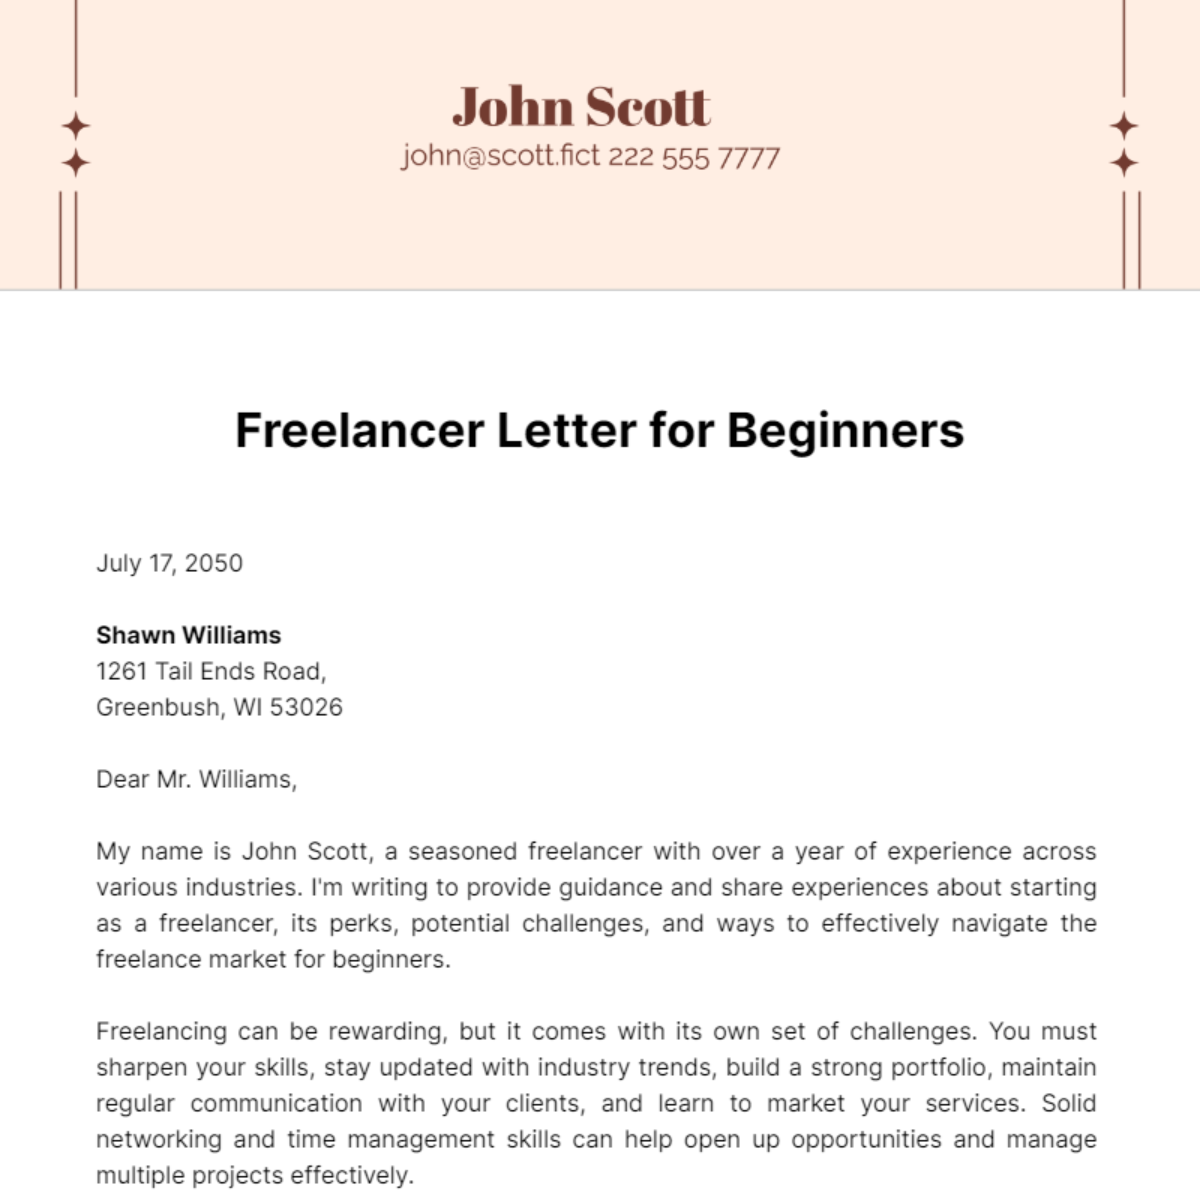 Freelancer Letter for Beginners Template